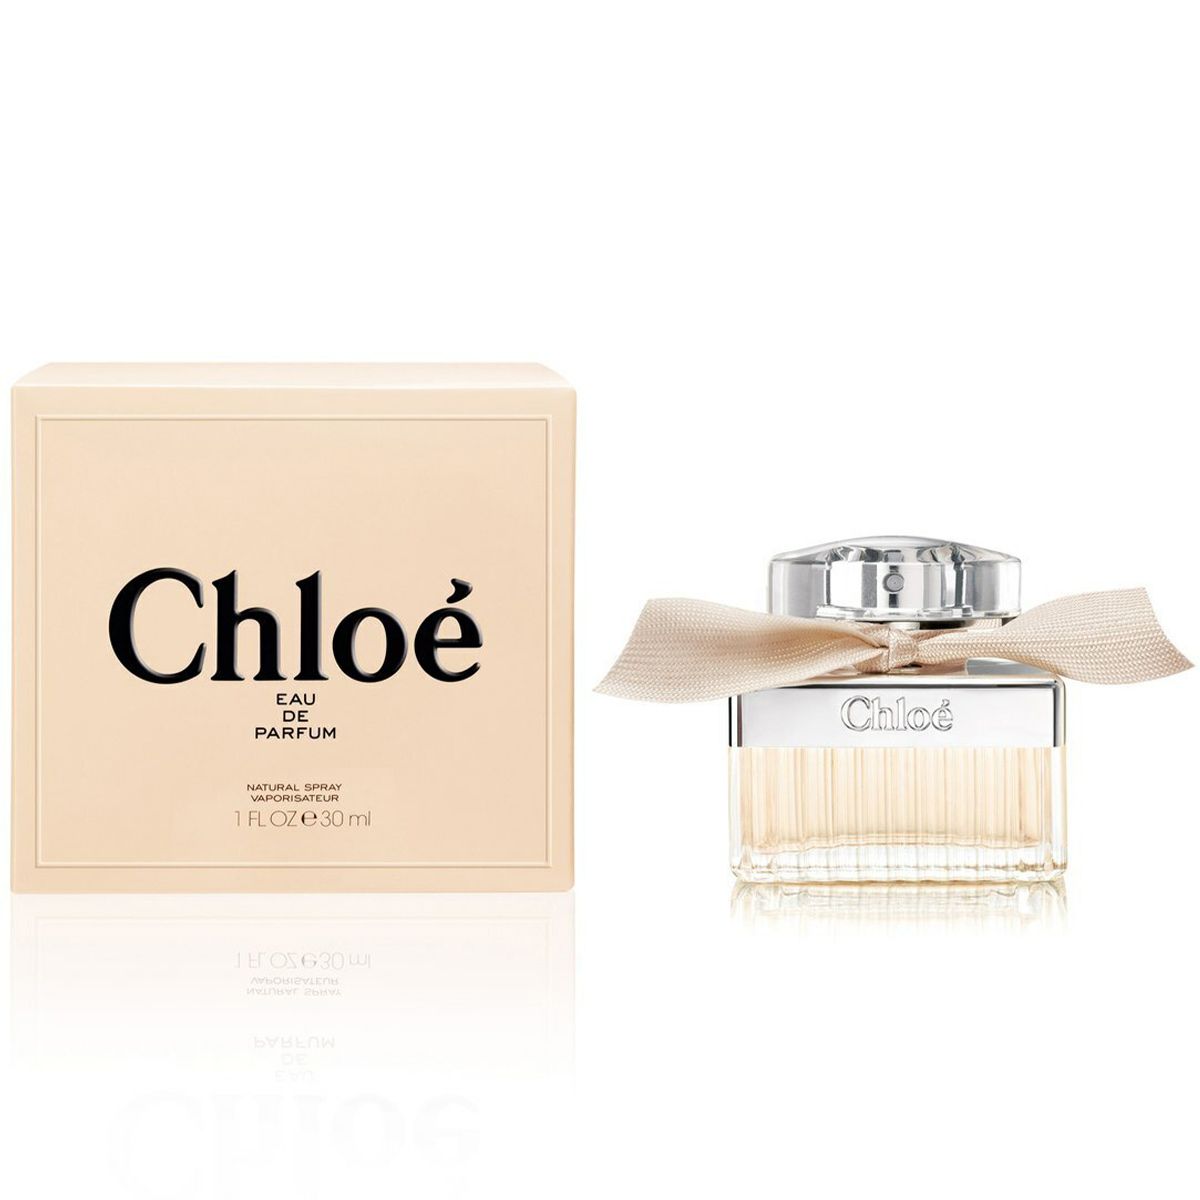  Chloe Eau de Parfum 